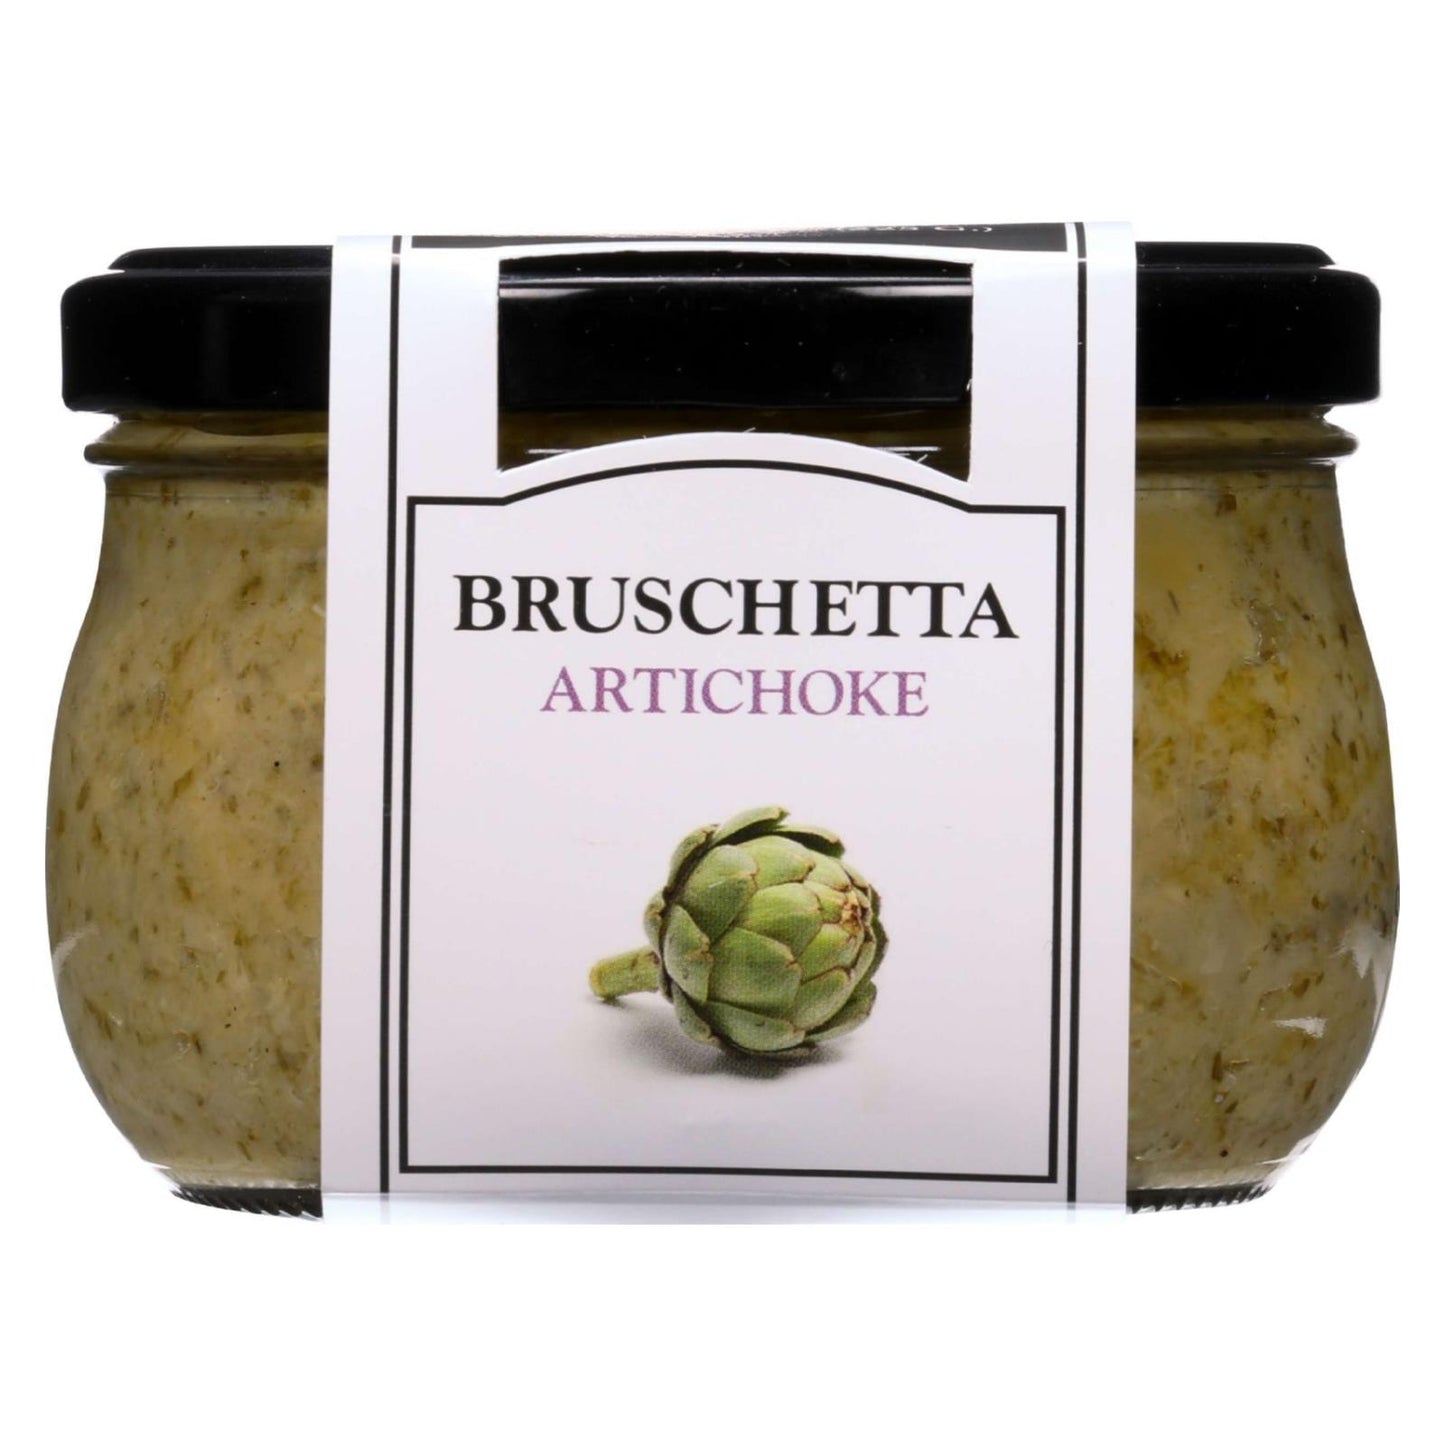 Cucina And Amore - Bruschetta - Artichoke - 7.9 Oz - Case Of 6